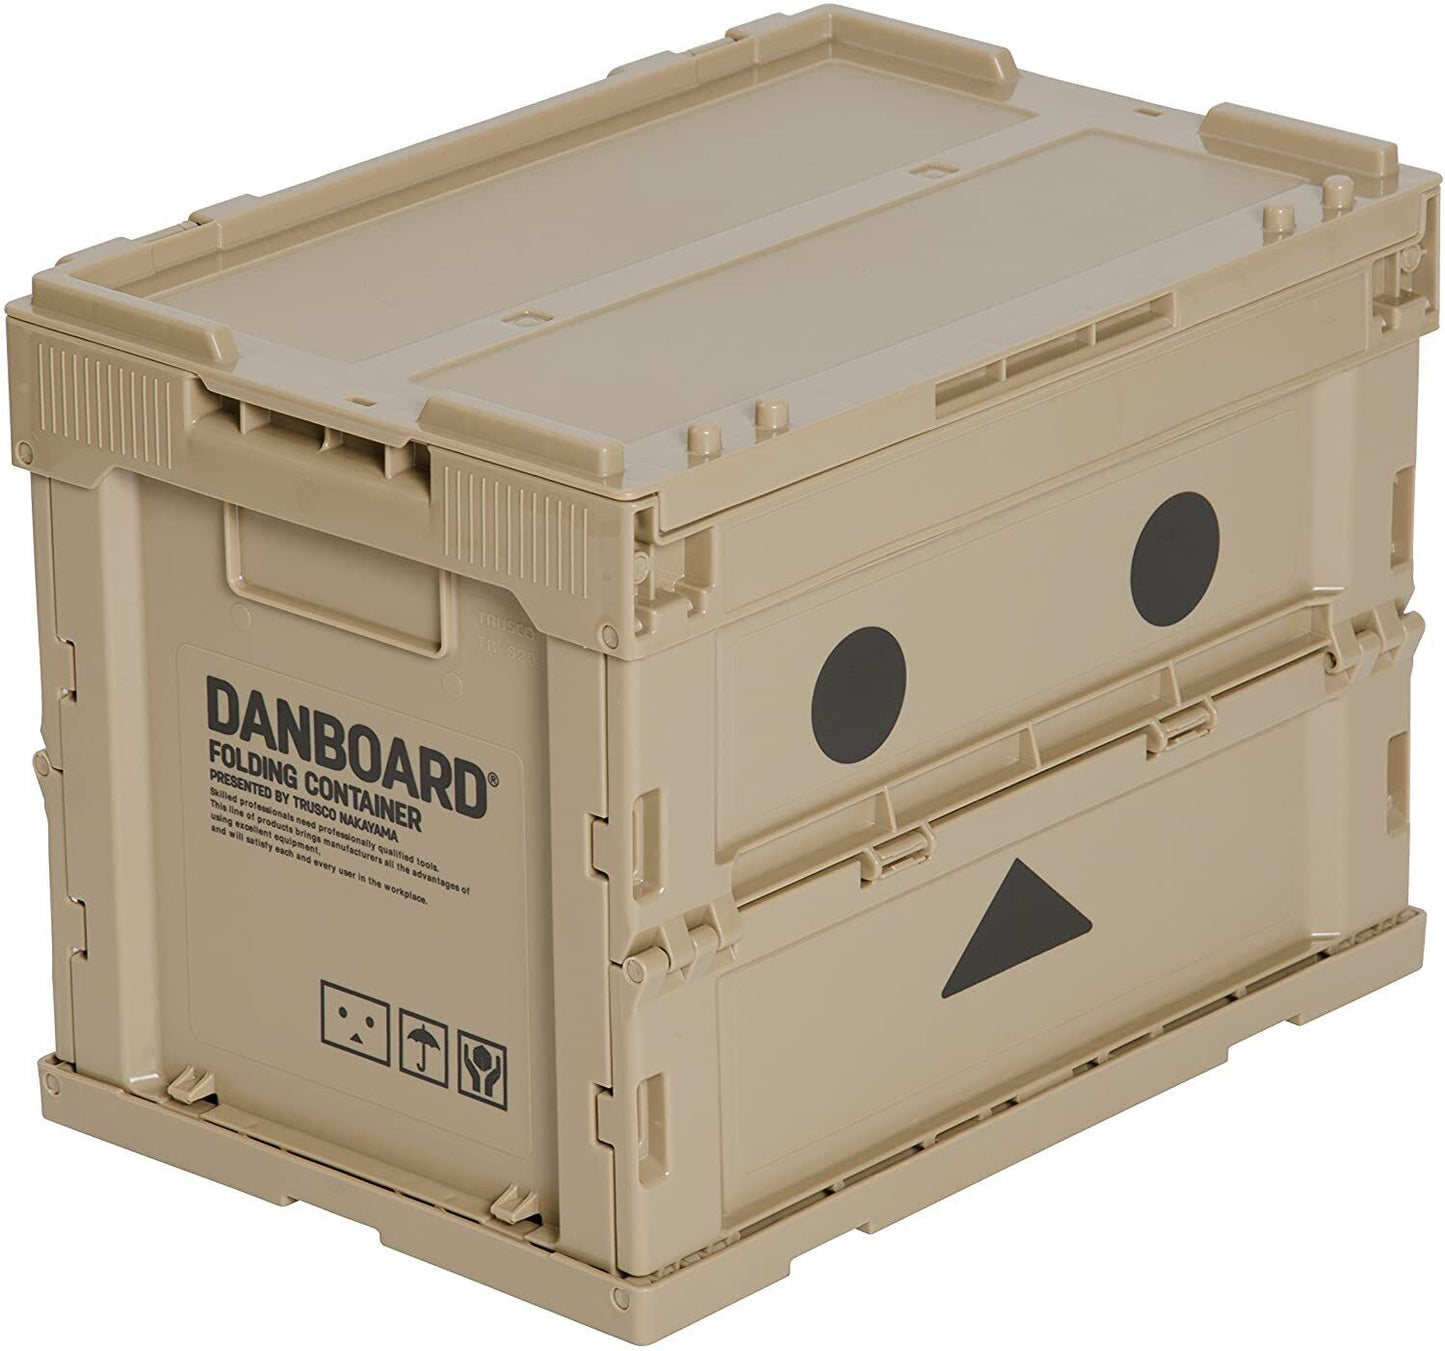 TRUSCO Danboard Folding Container Case Storage Box 20L